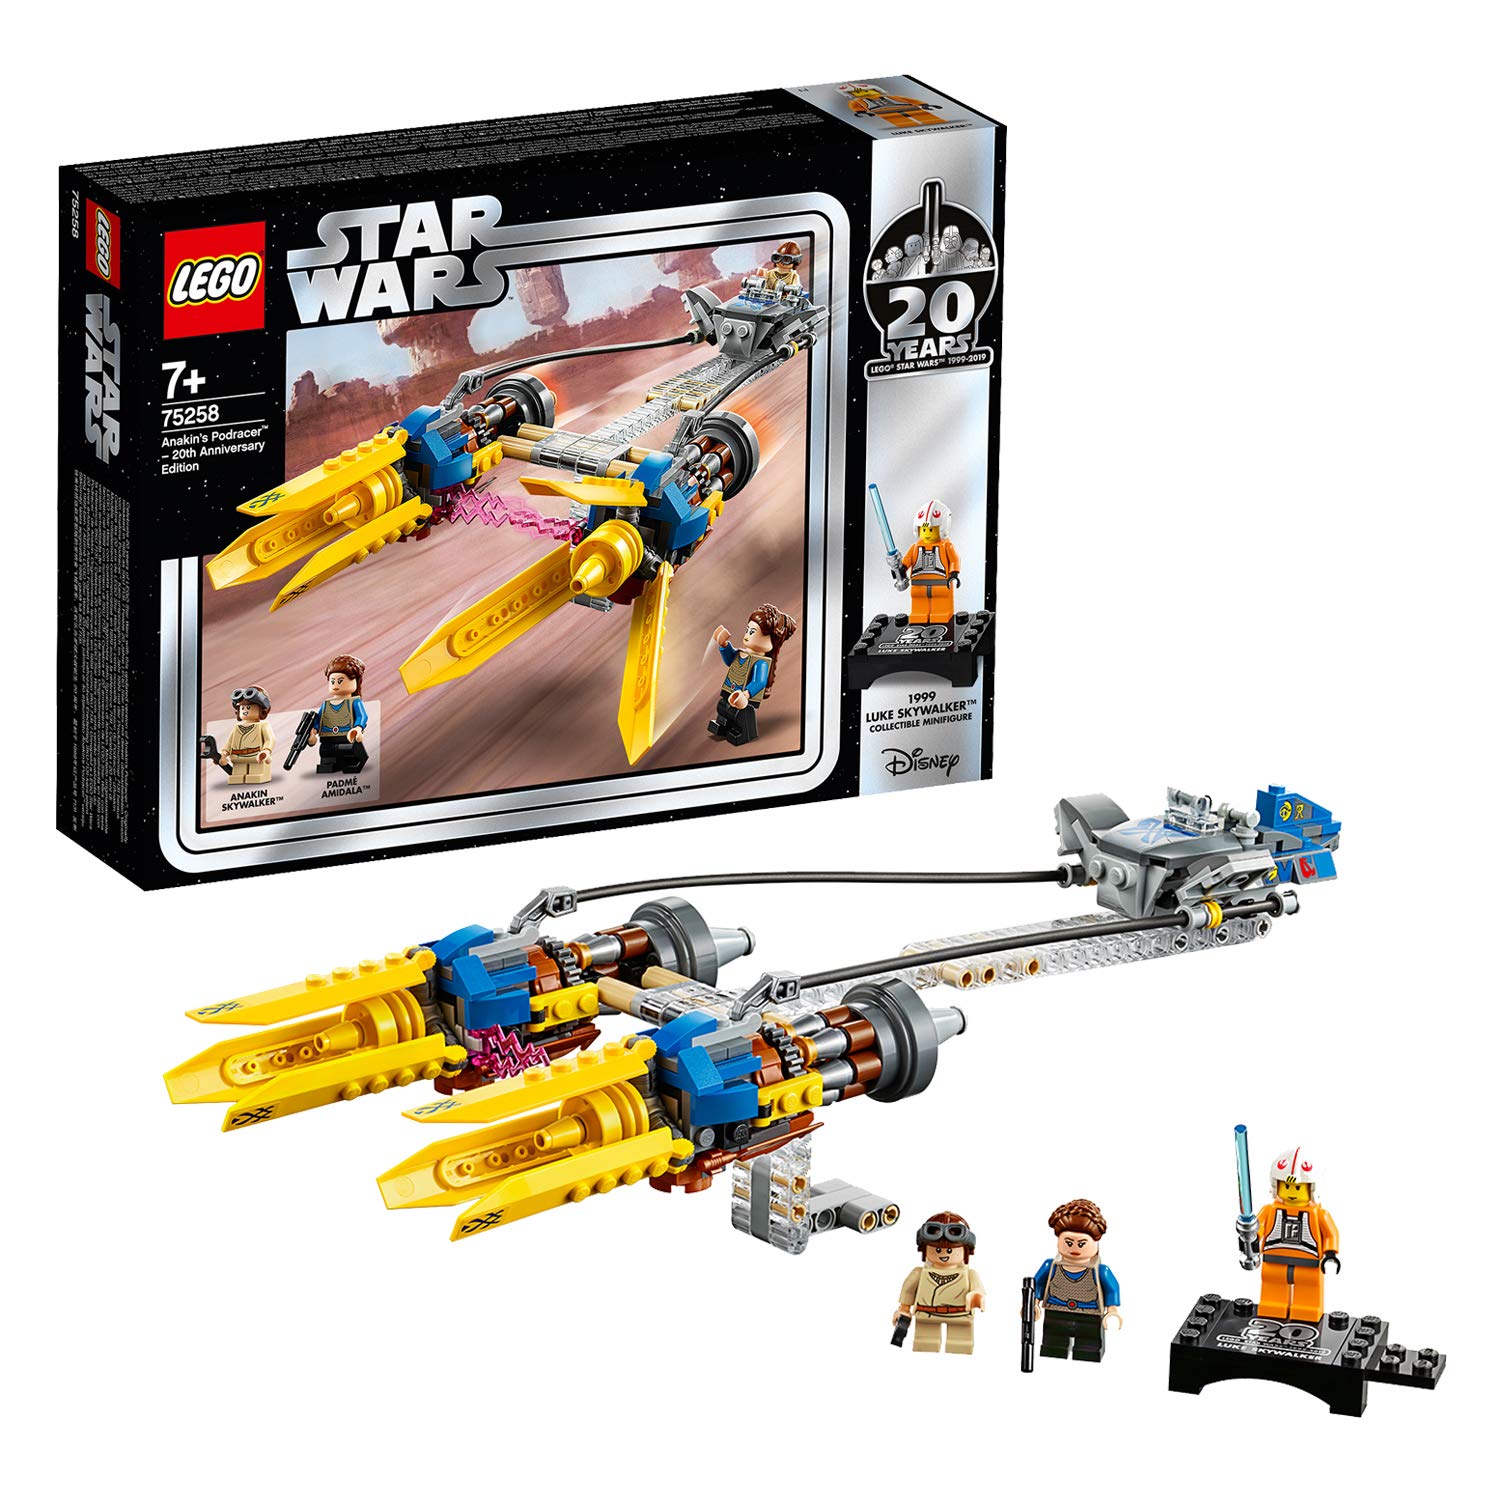 Lego Star Wars 75258 - The Dark Threat Anakins Podracer - 20 Years Lego St